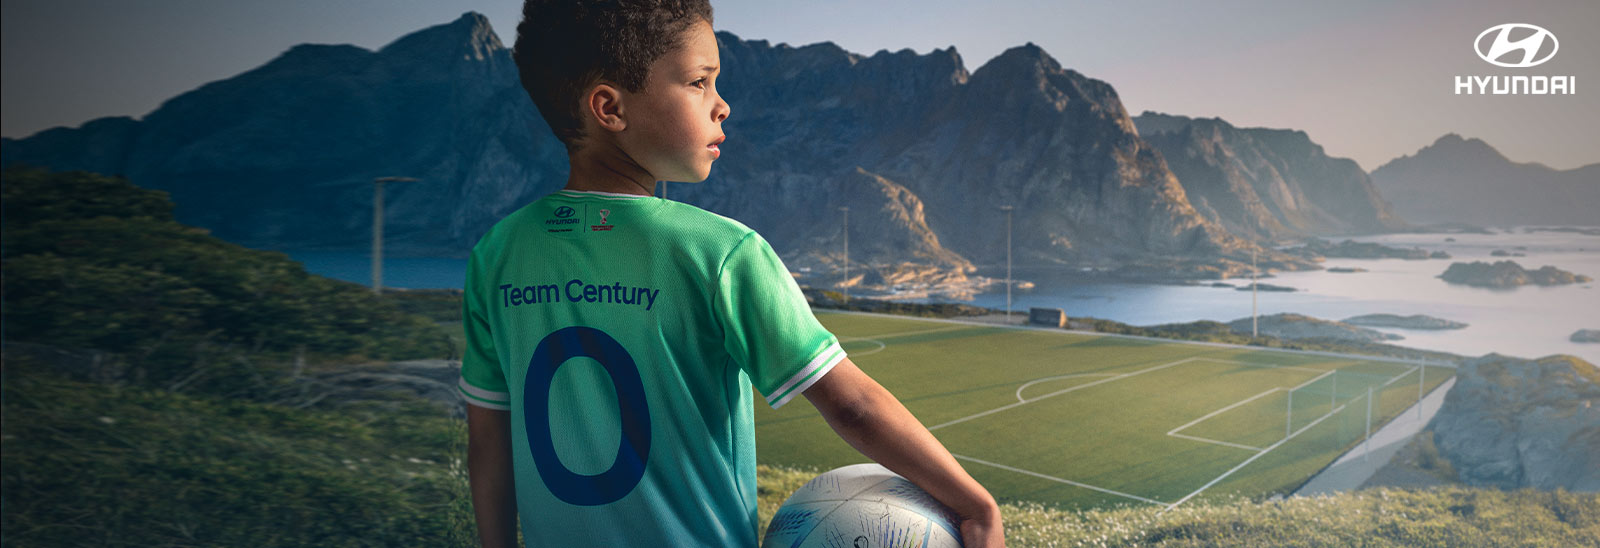 Niño con playera Goal of the Century y balón en la mano con una cancha de futbol al fondo